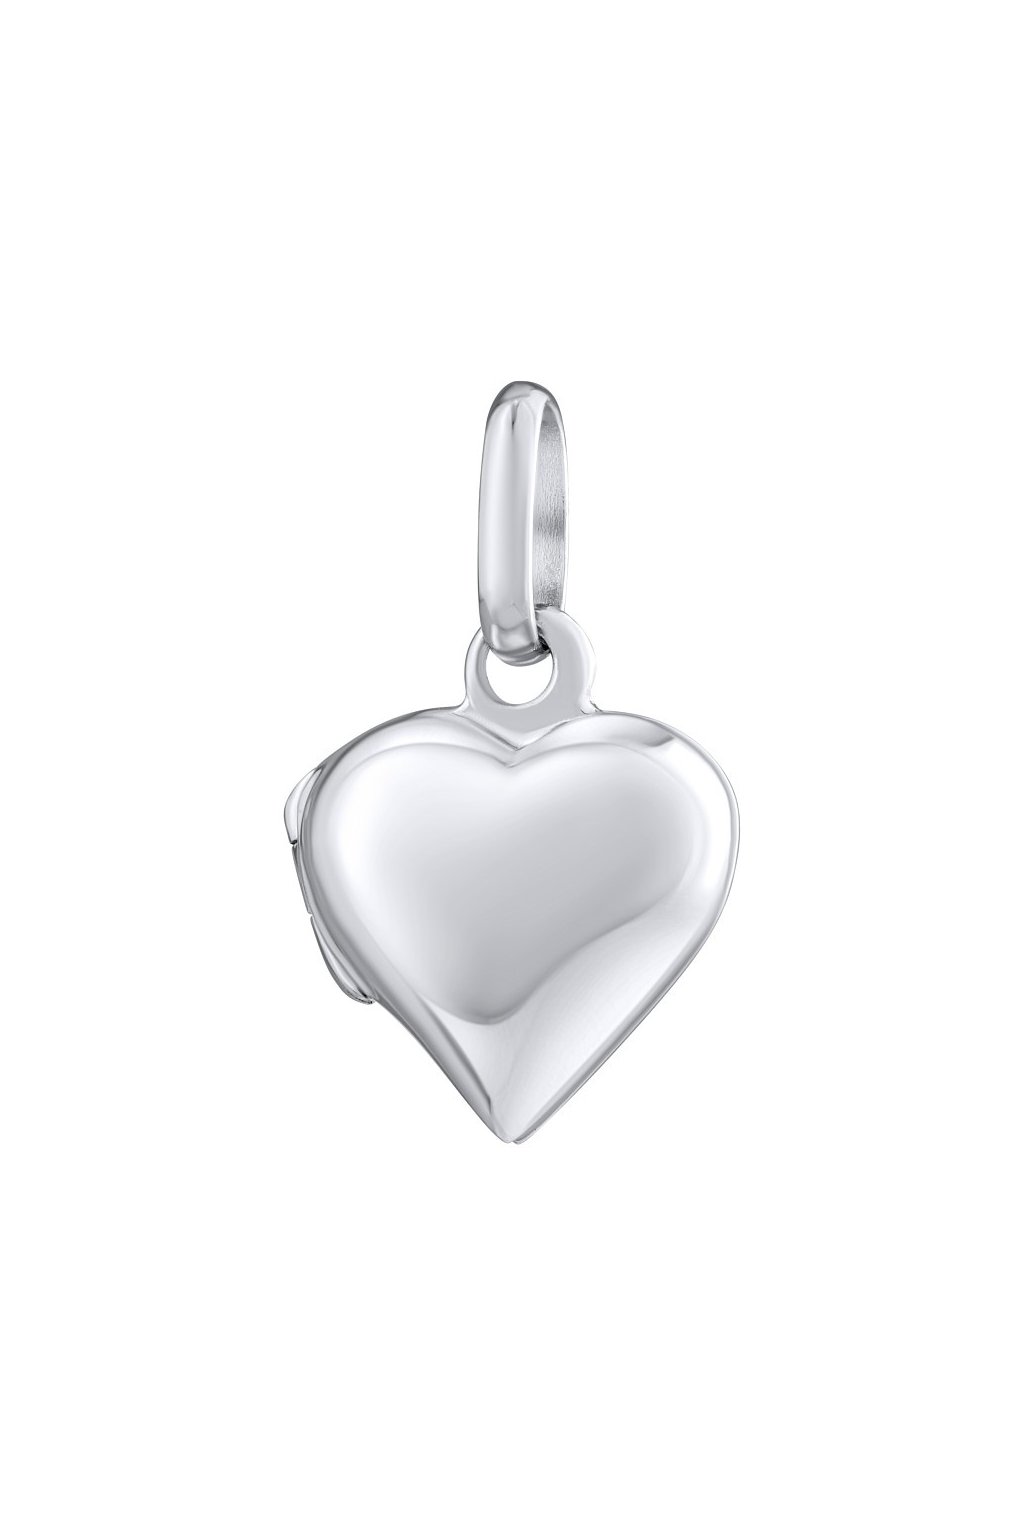 Strieborný medailón otváracie srdce 12 mm